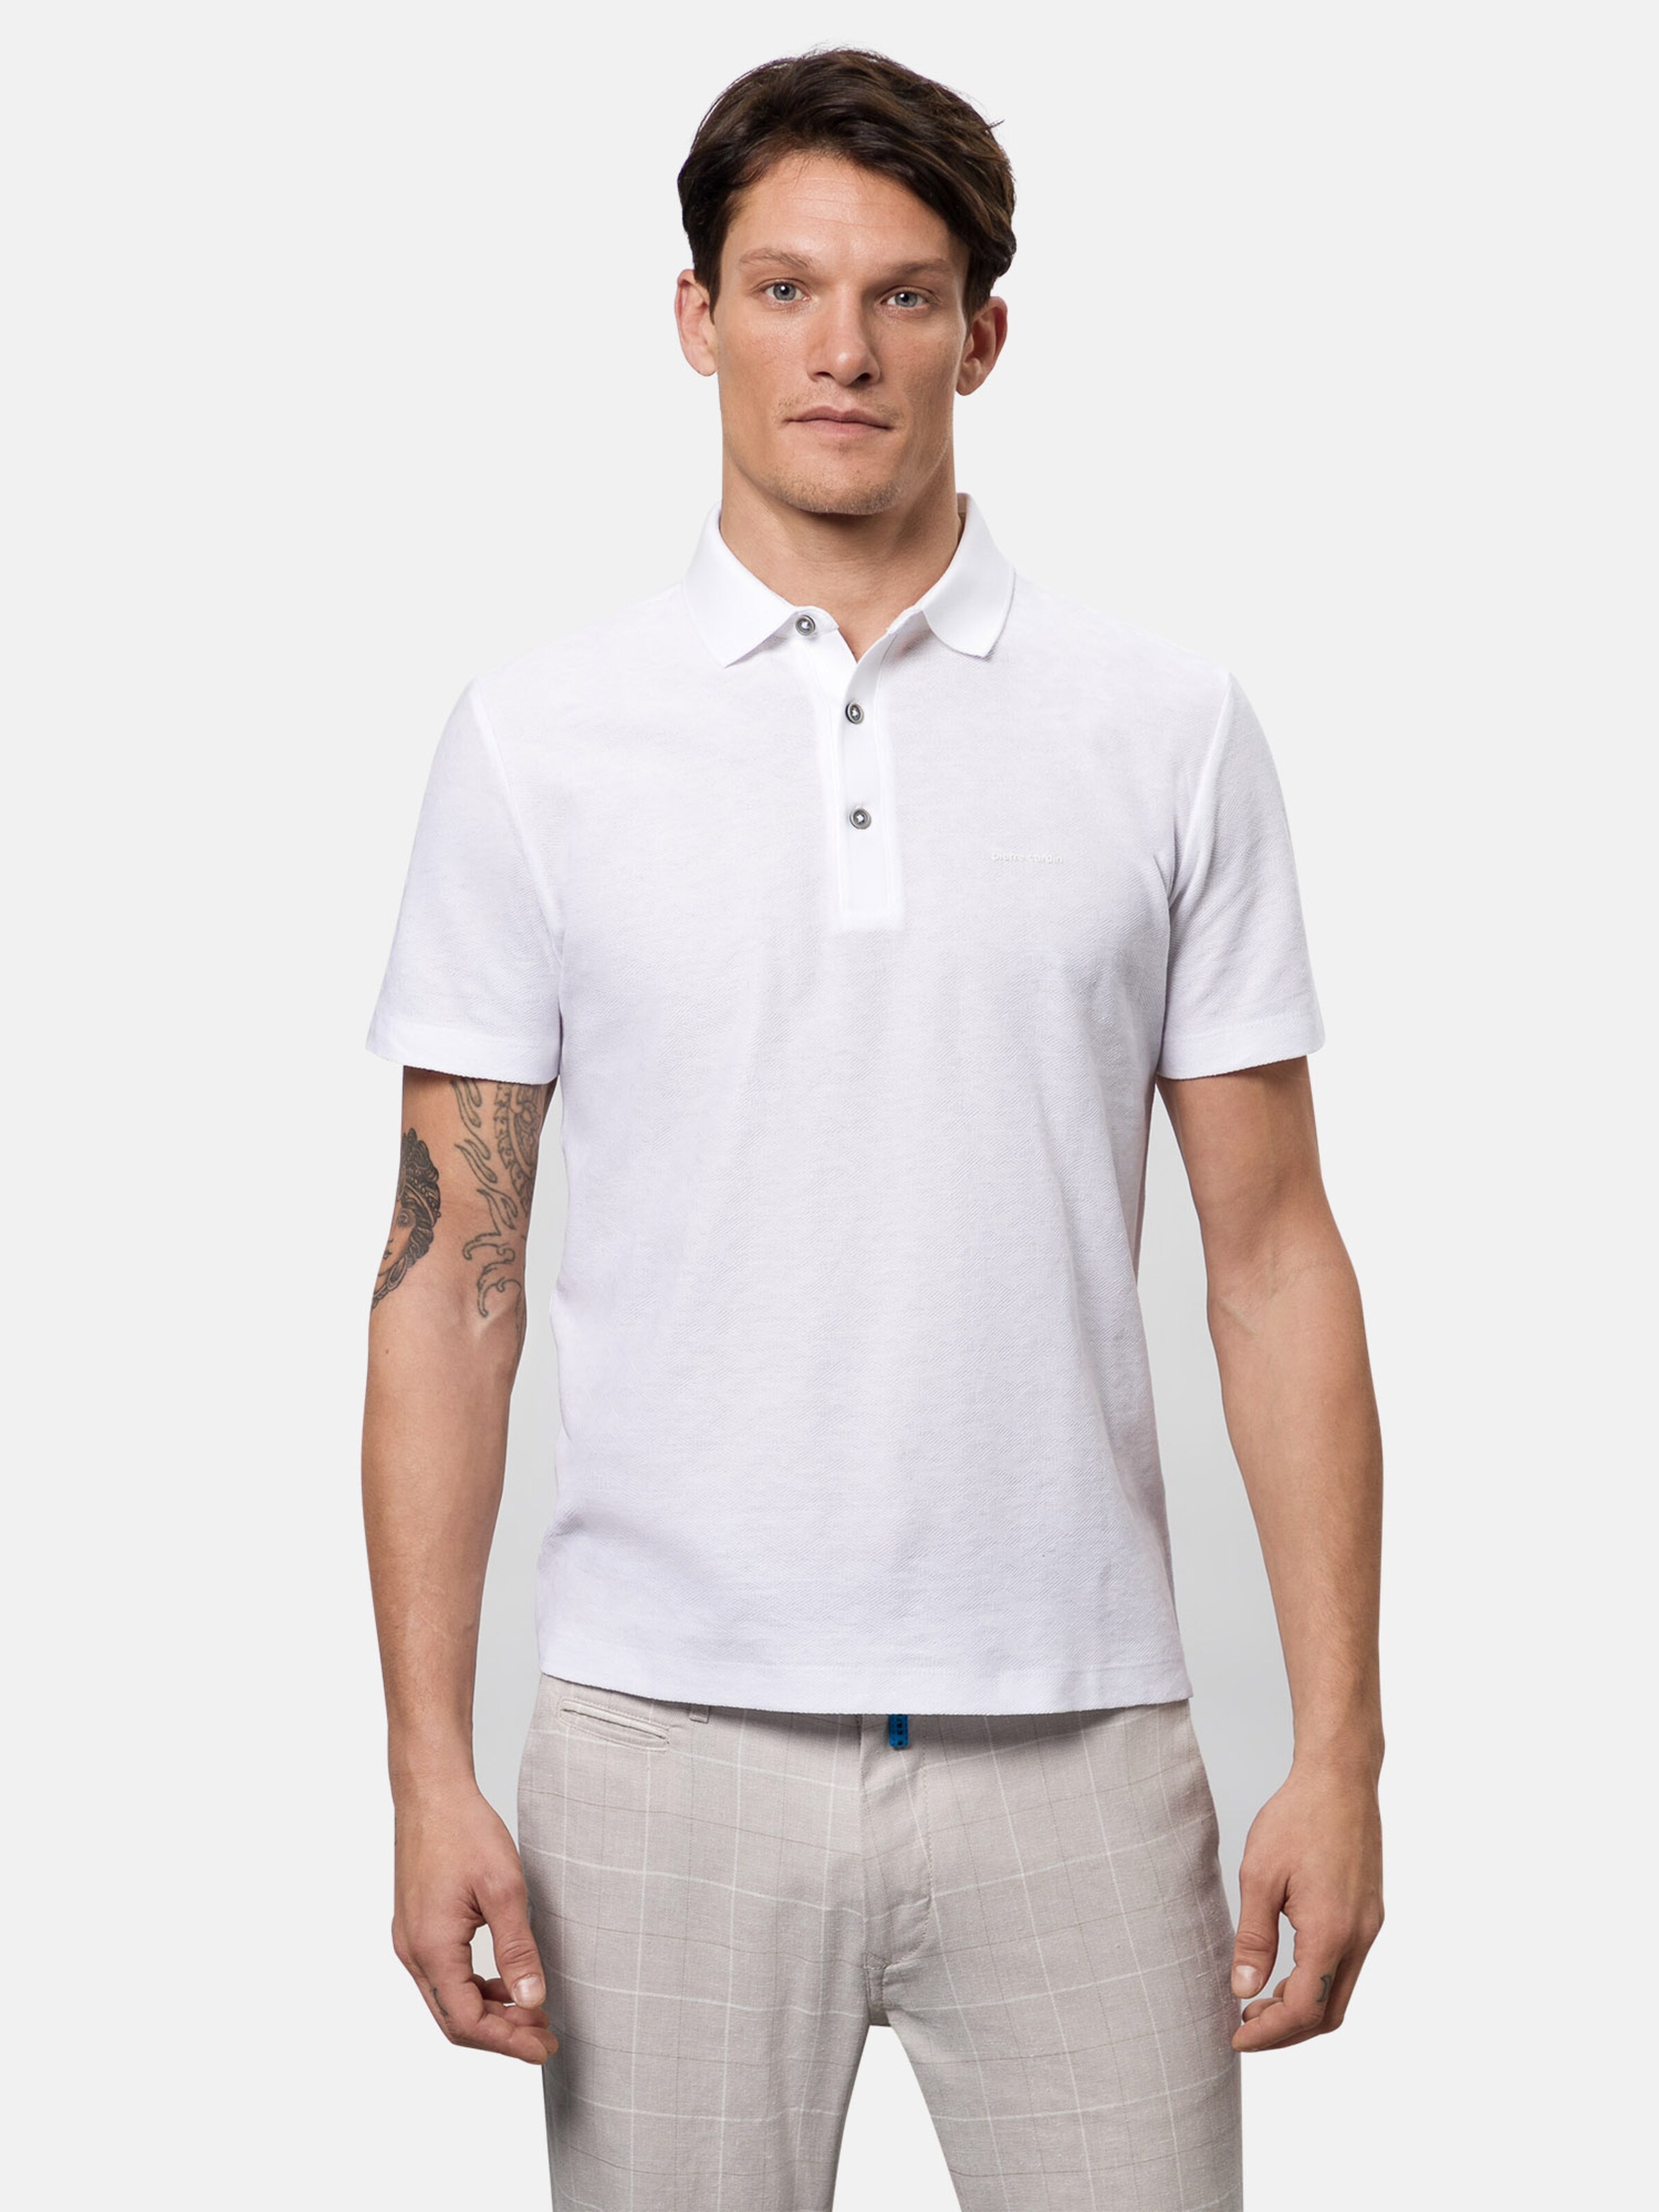 Männer Große Größen PIERRE CARDIN Shirt in Weiß - DJ01525